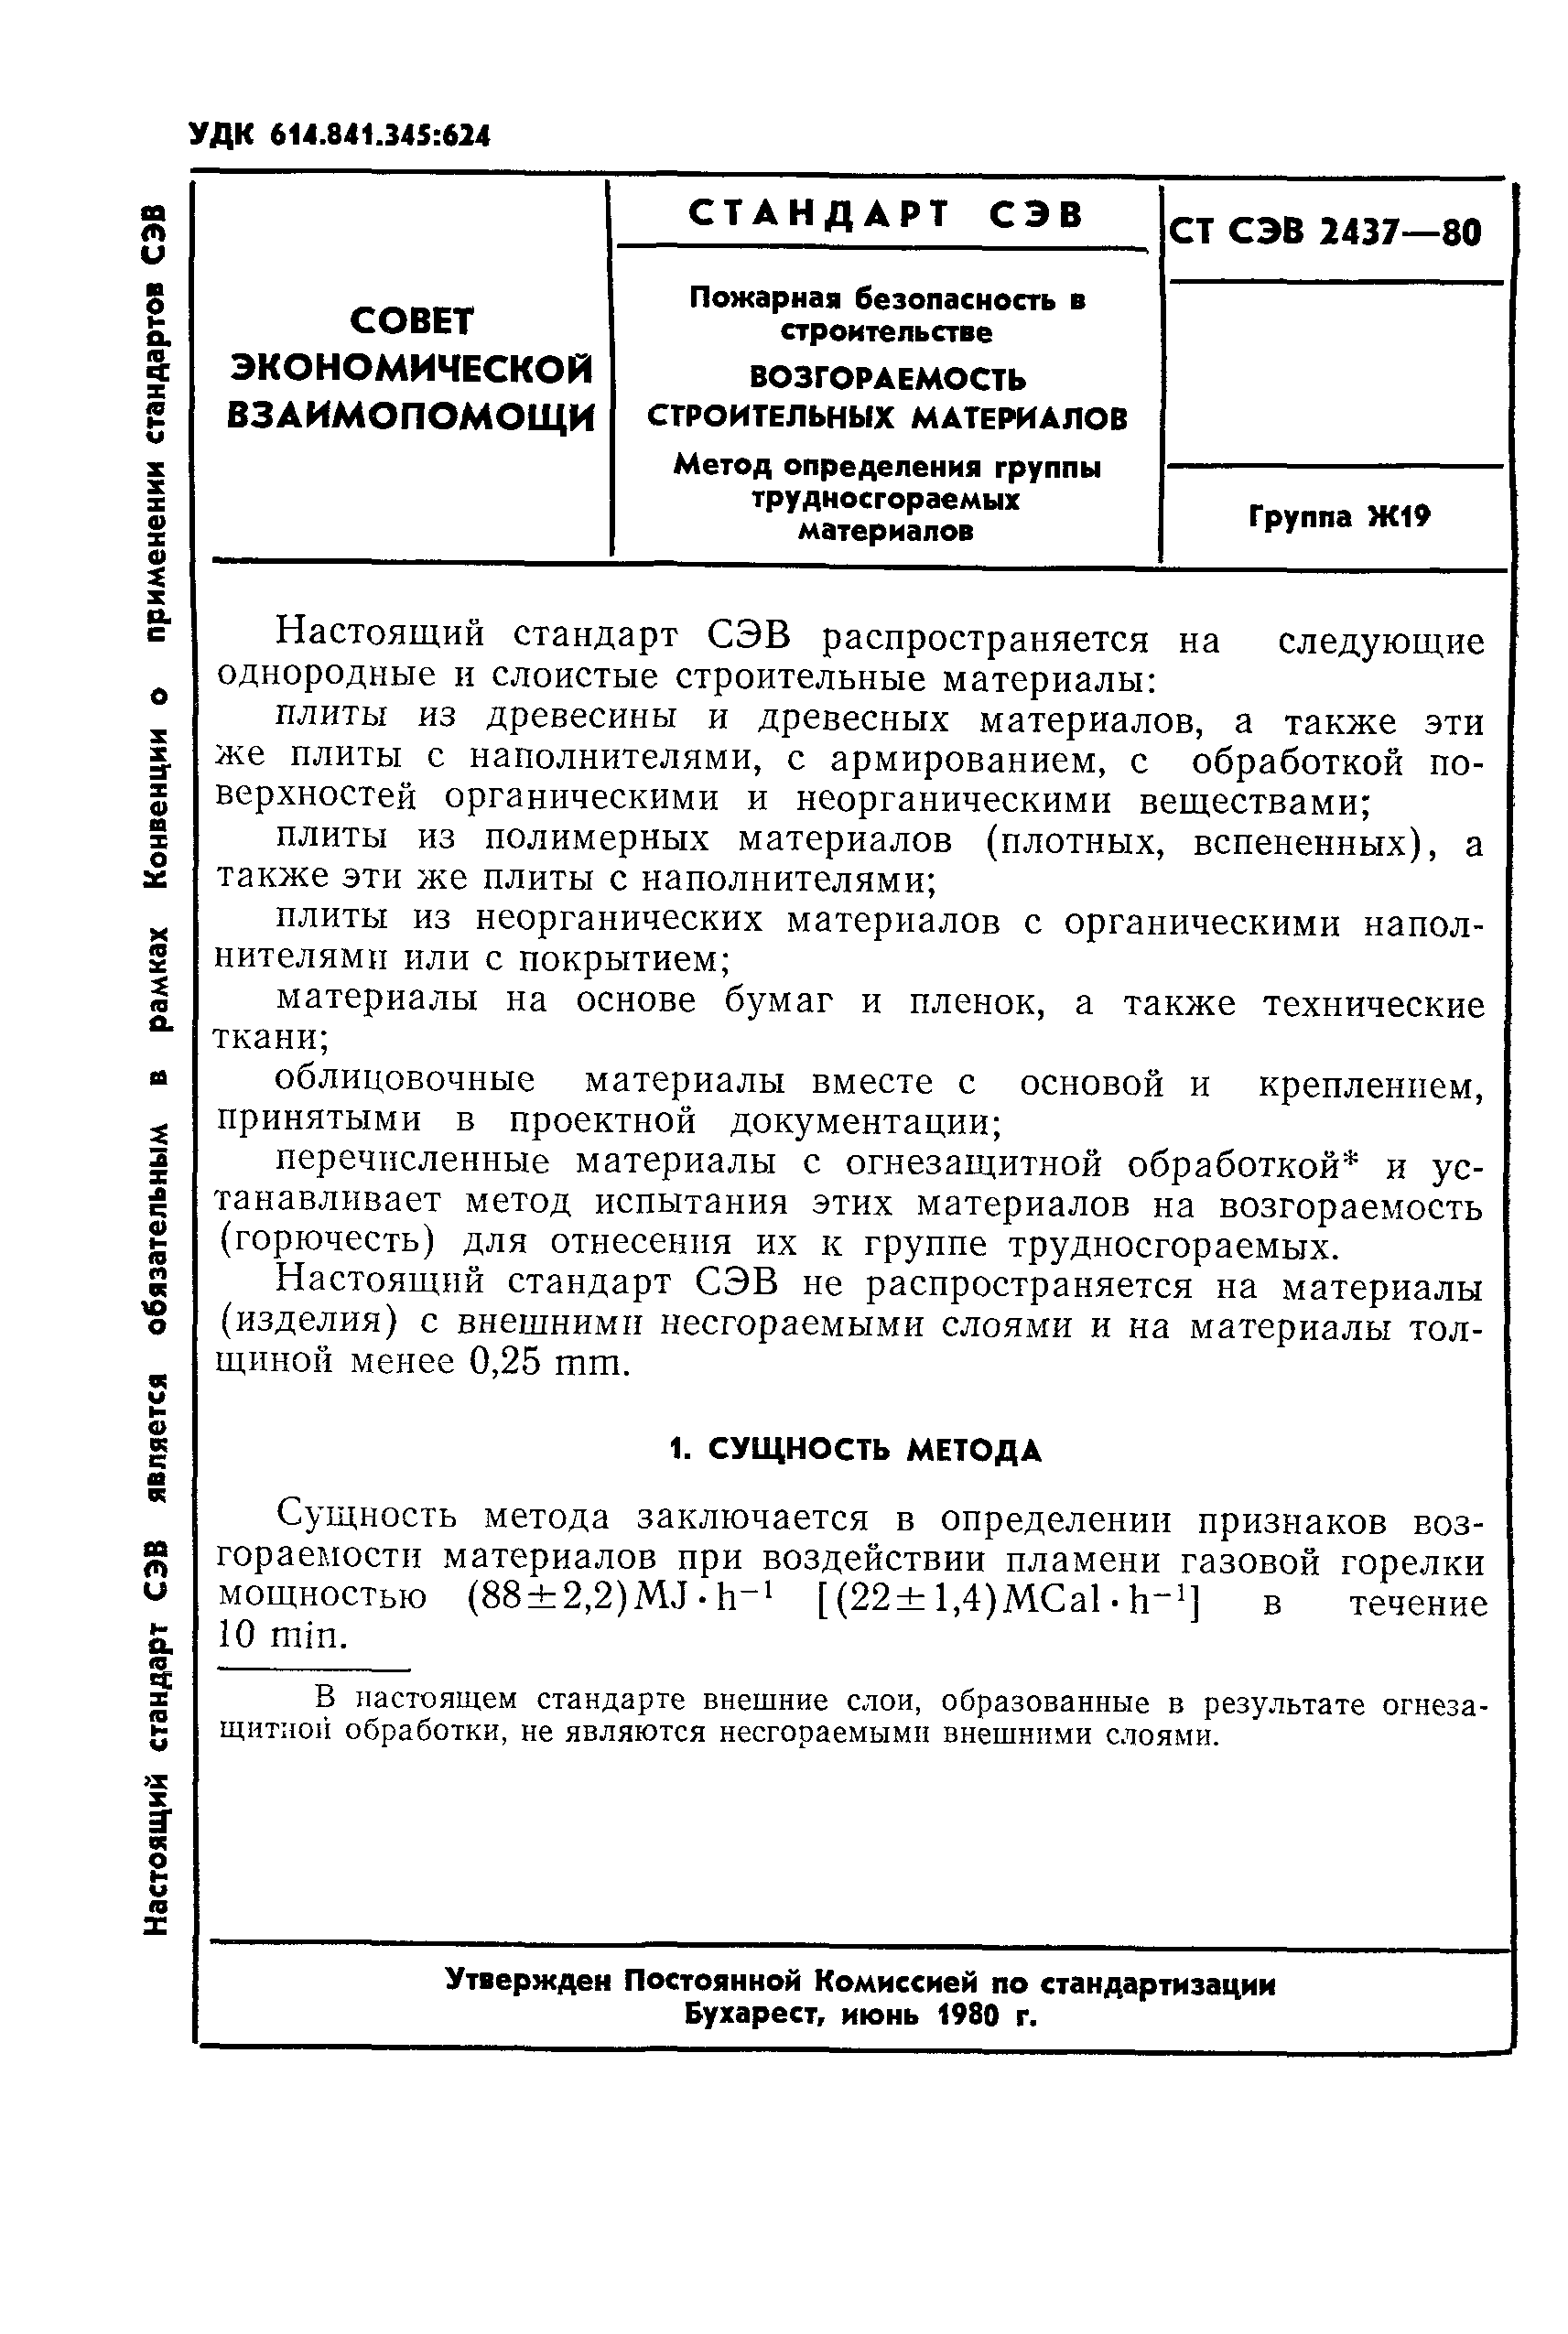 СТ СЭВ 2437-80